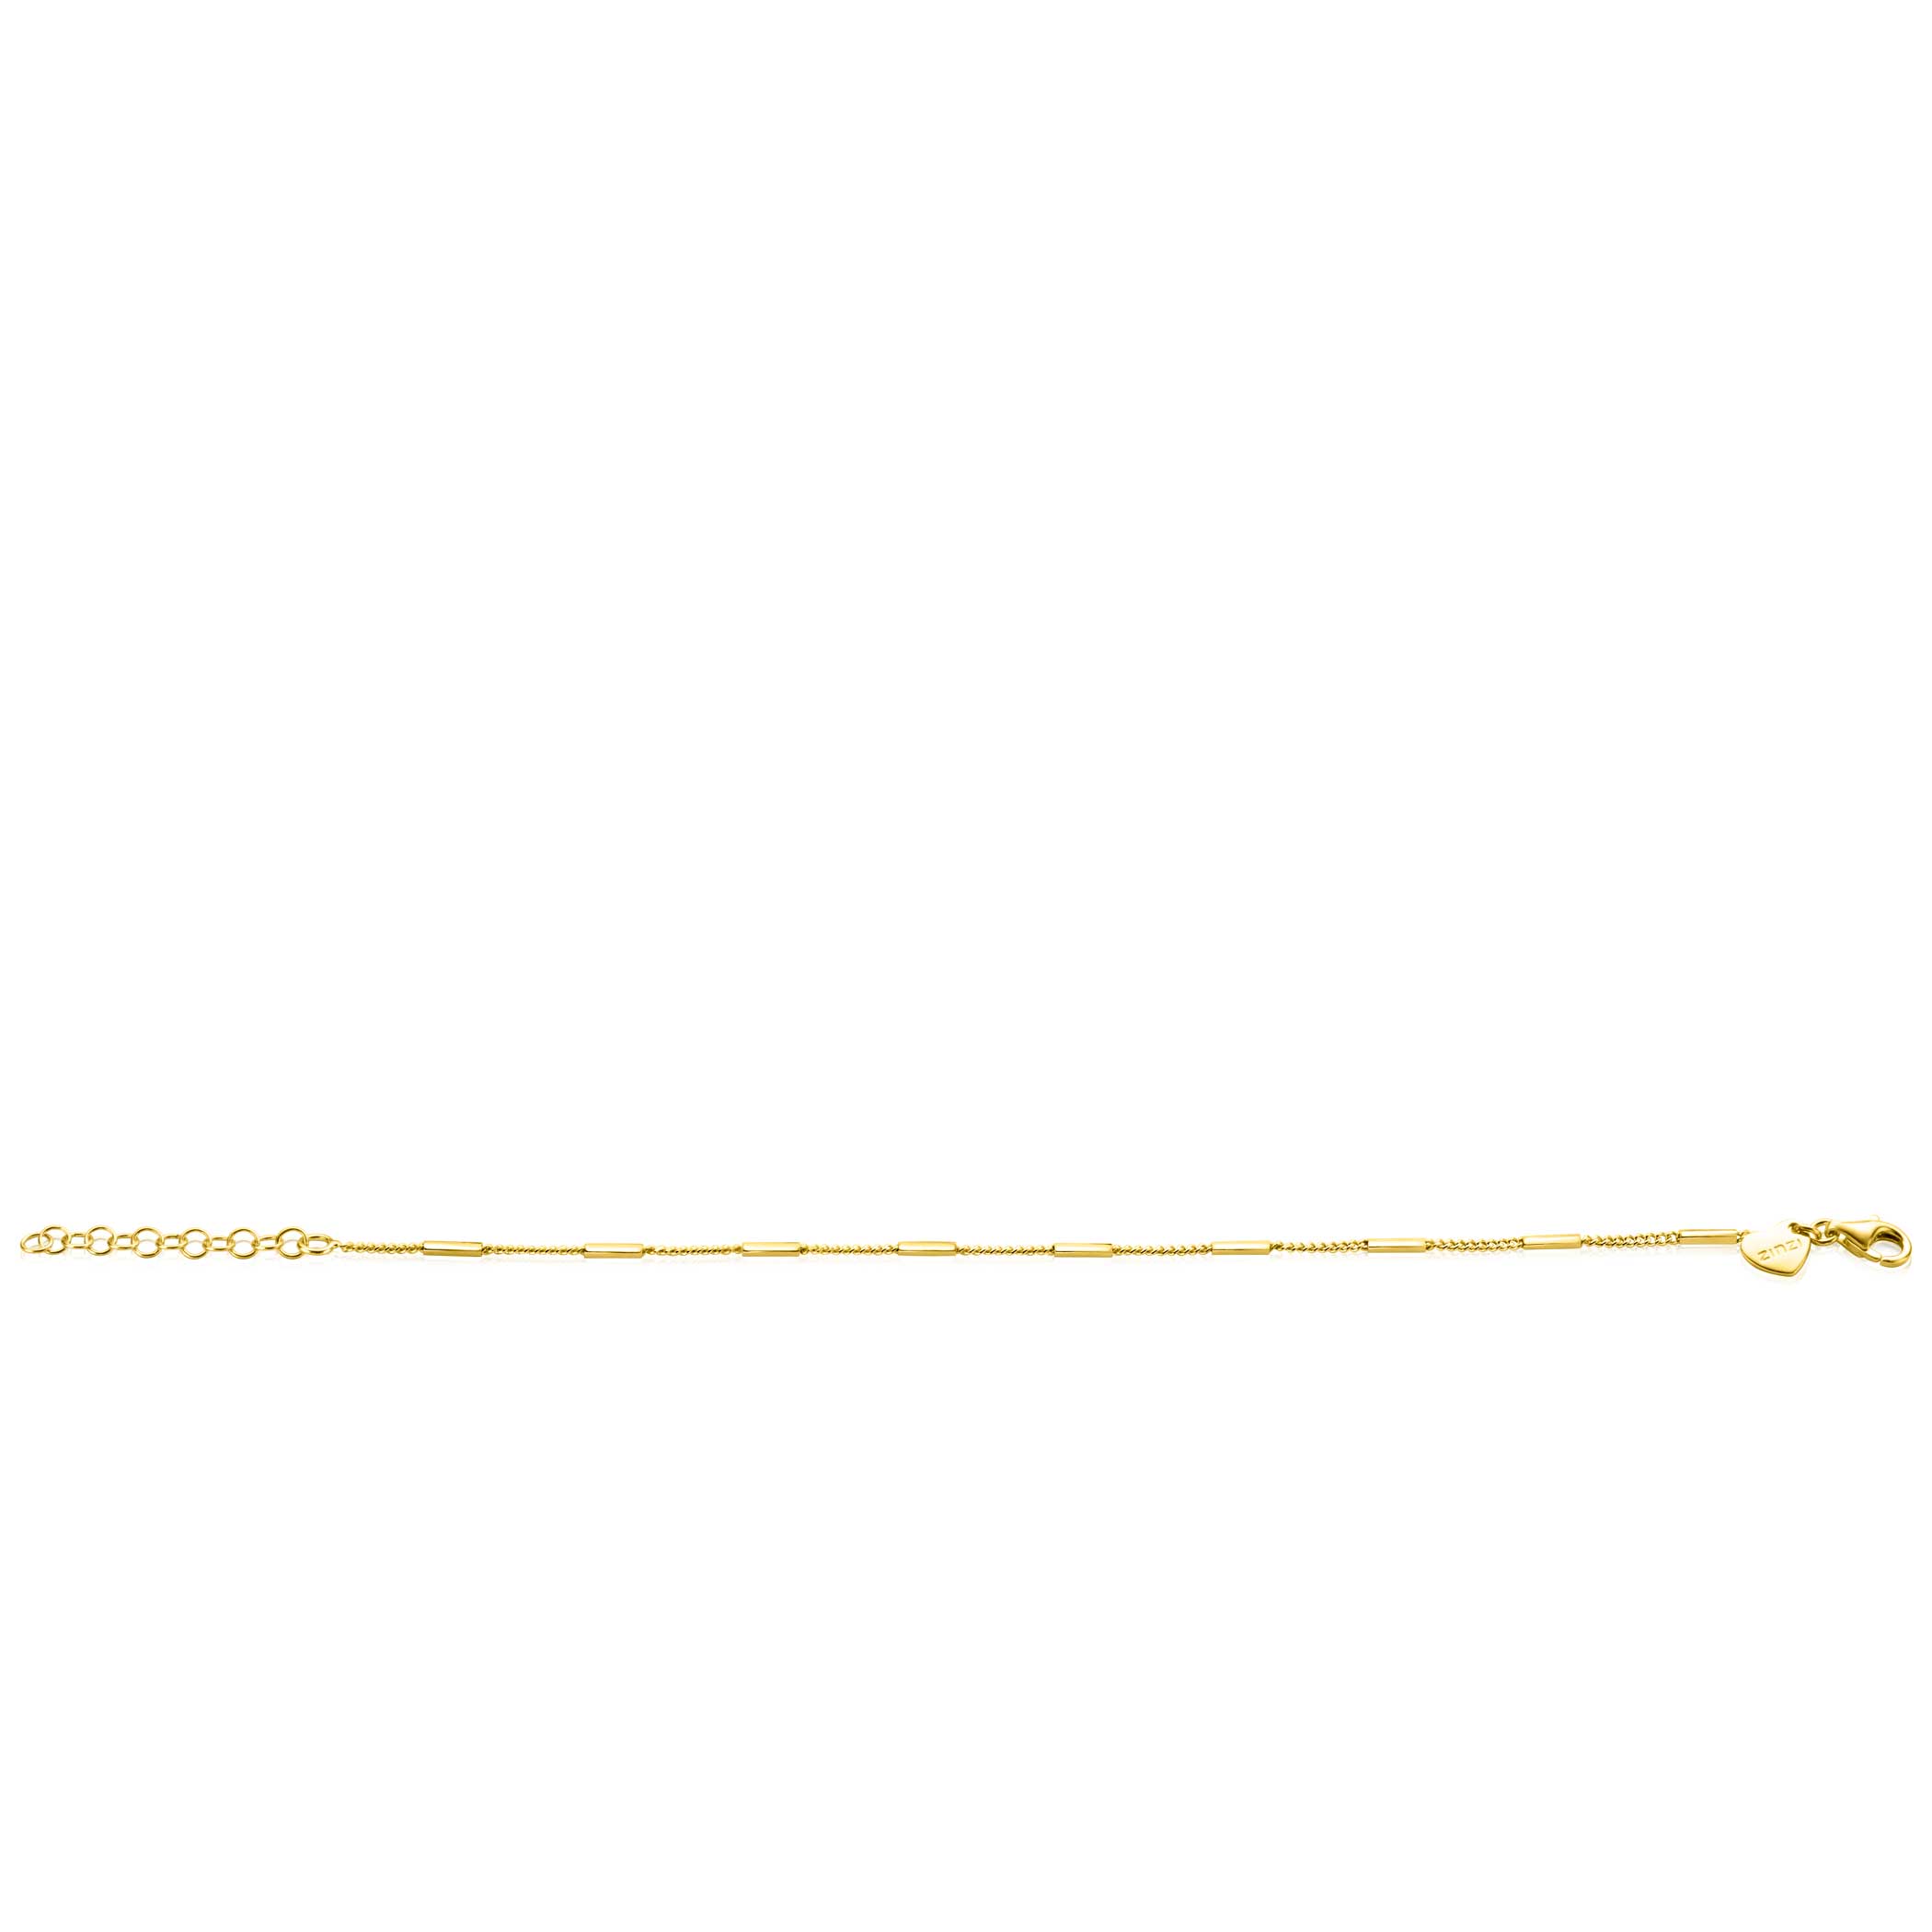 ZINZI gold plated zilveren gourmet armband met staafjes 1,6mm breed 16-19cm ZIA2366G